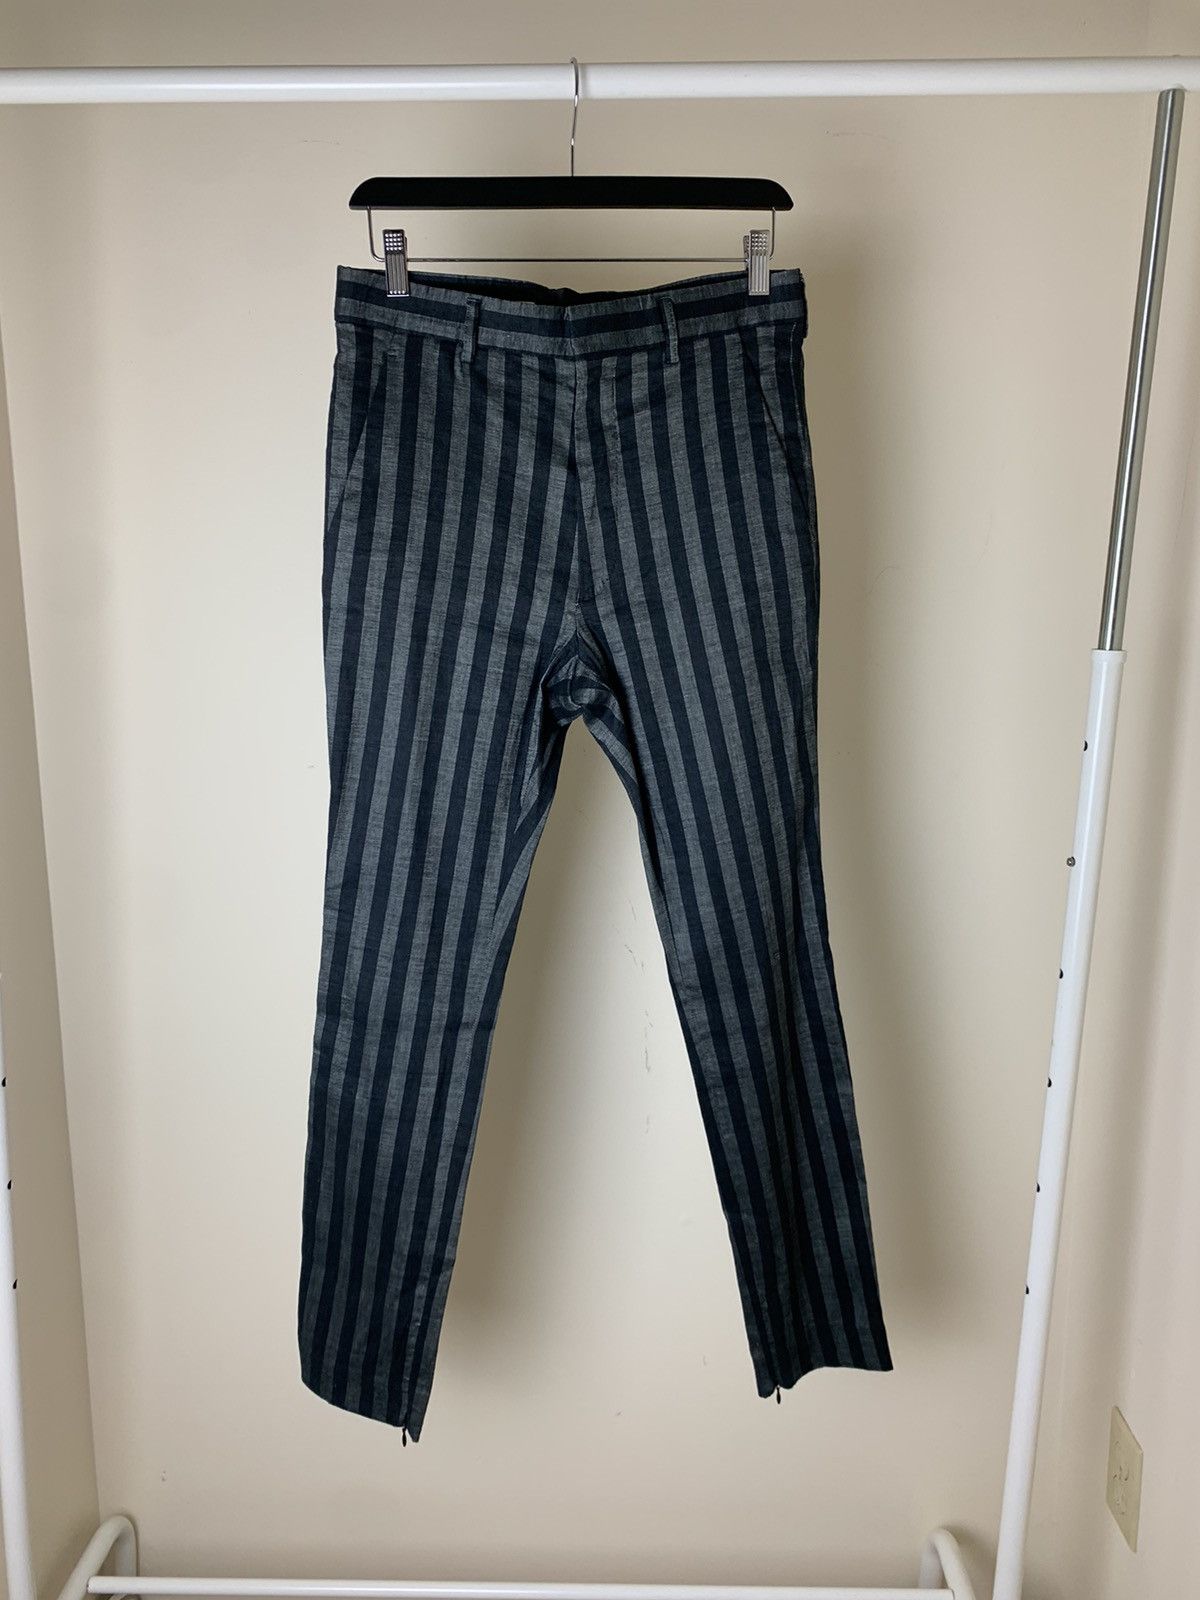 Haider Ackermann Haider Ackermann SS15 Black and Gray Striped Trousers ...